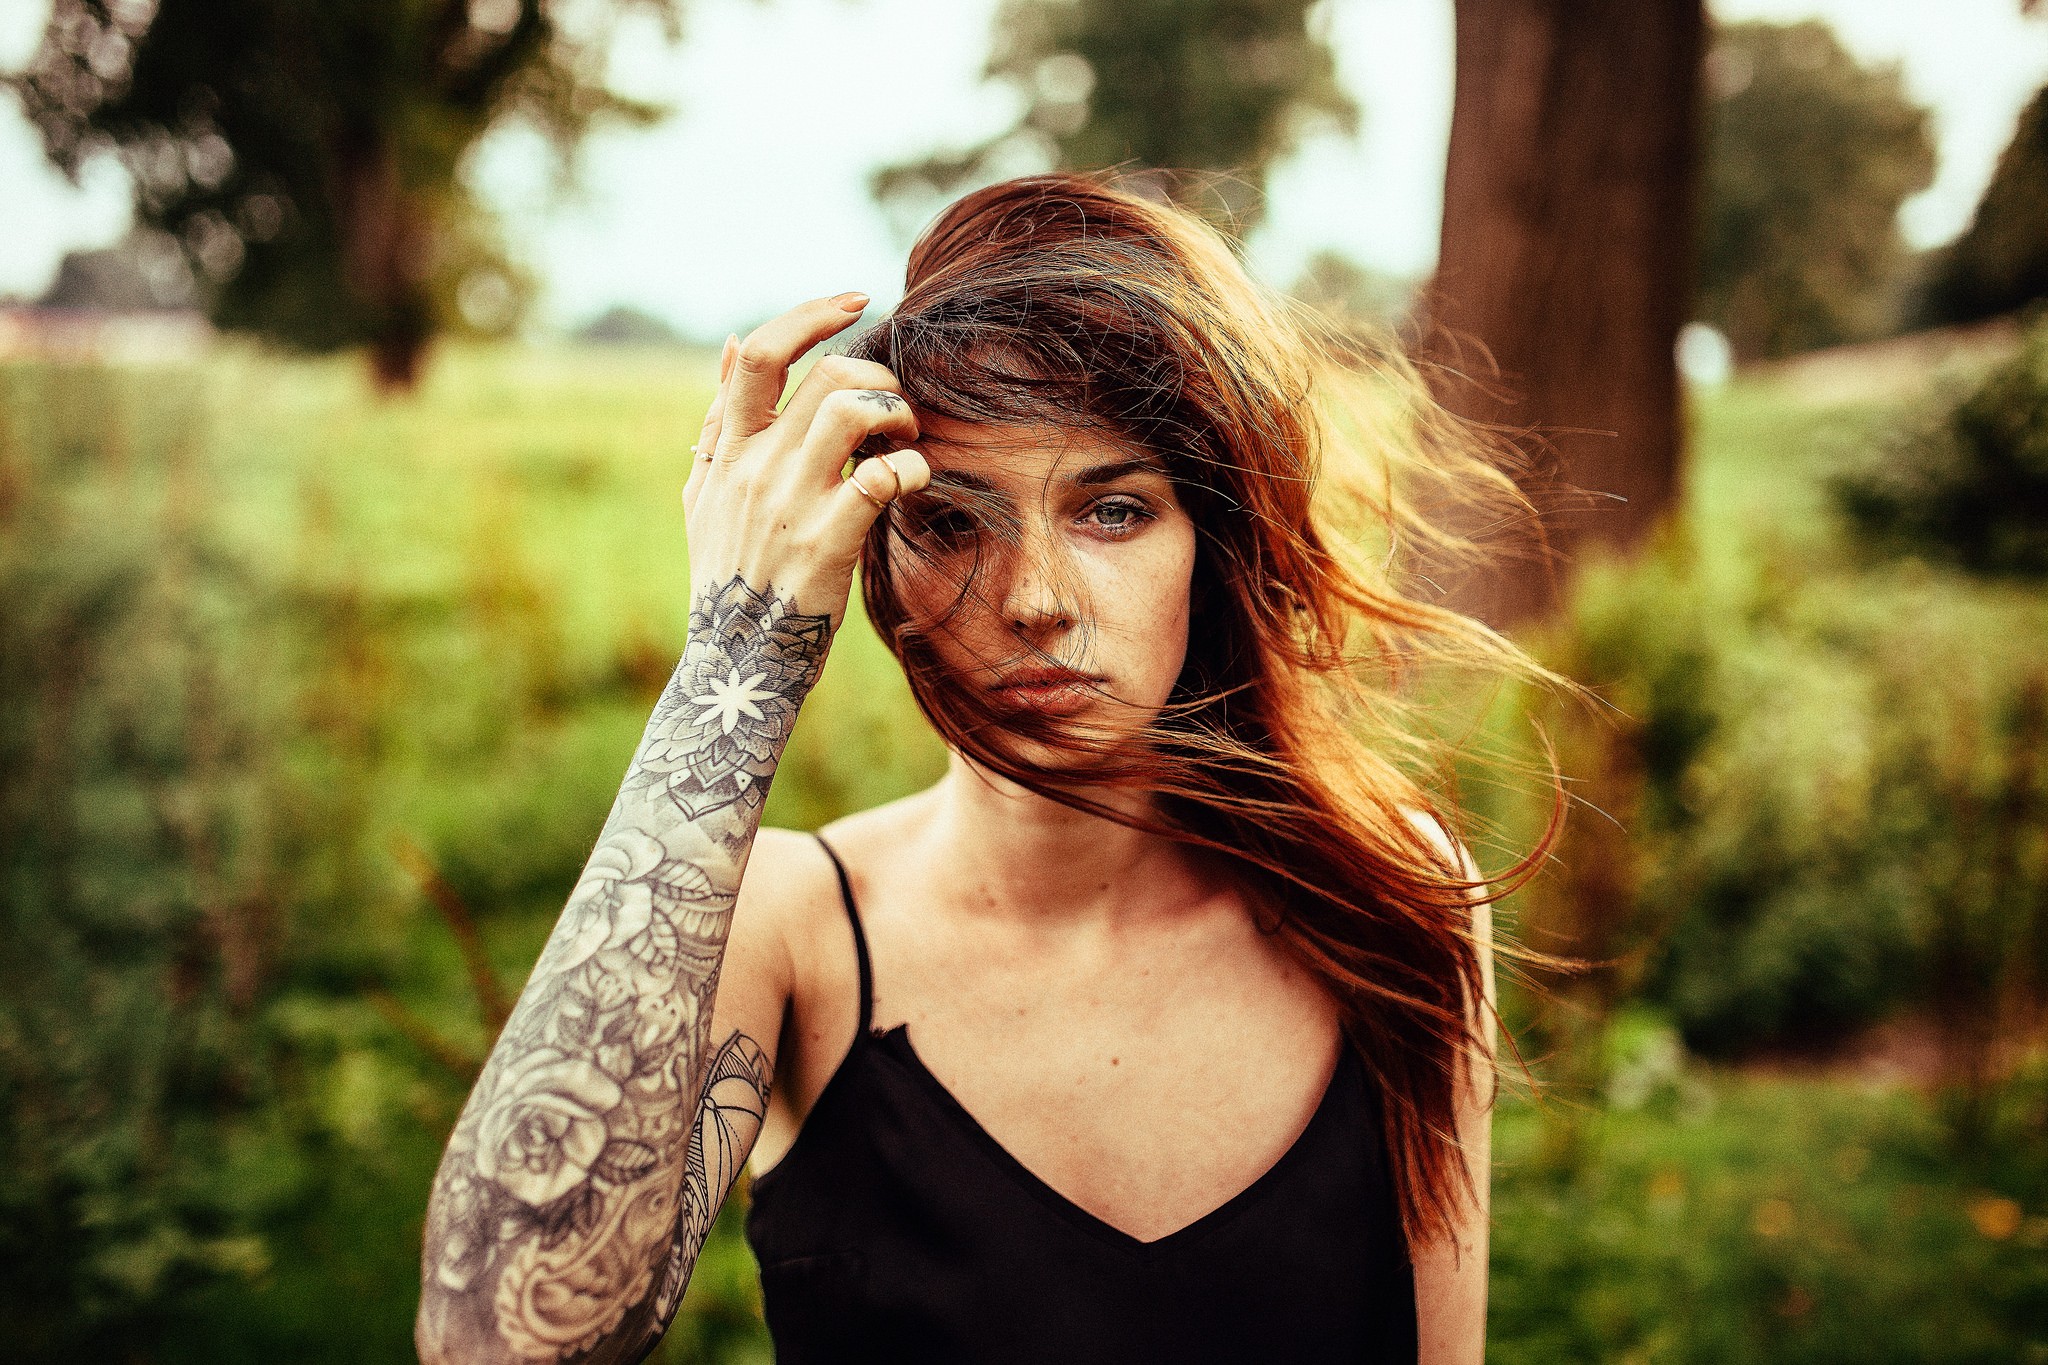 Women Model Andre Josselin Scarlett Simoneit Brunette Tattoo Looking At Viewer Hands In Hair Windy H 2048x1365